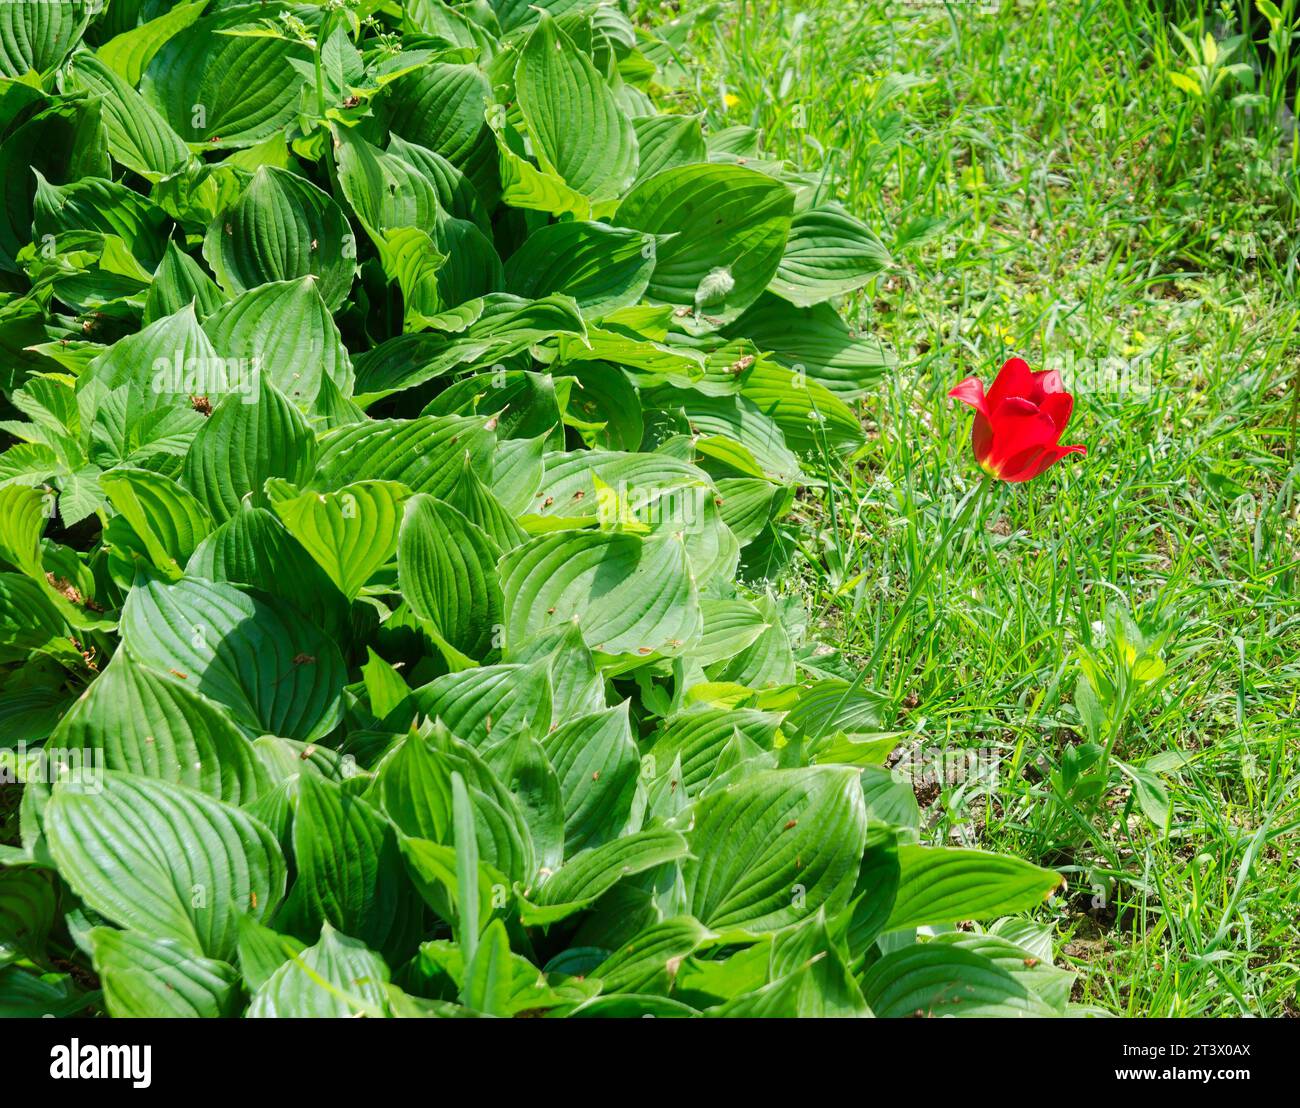 Einsame rote Blume inmitten des grünen Laubes Stockfoto